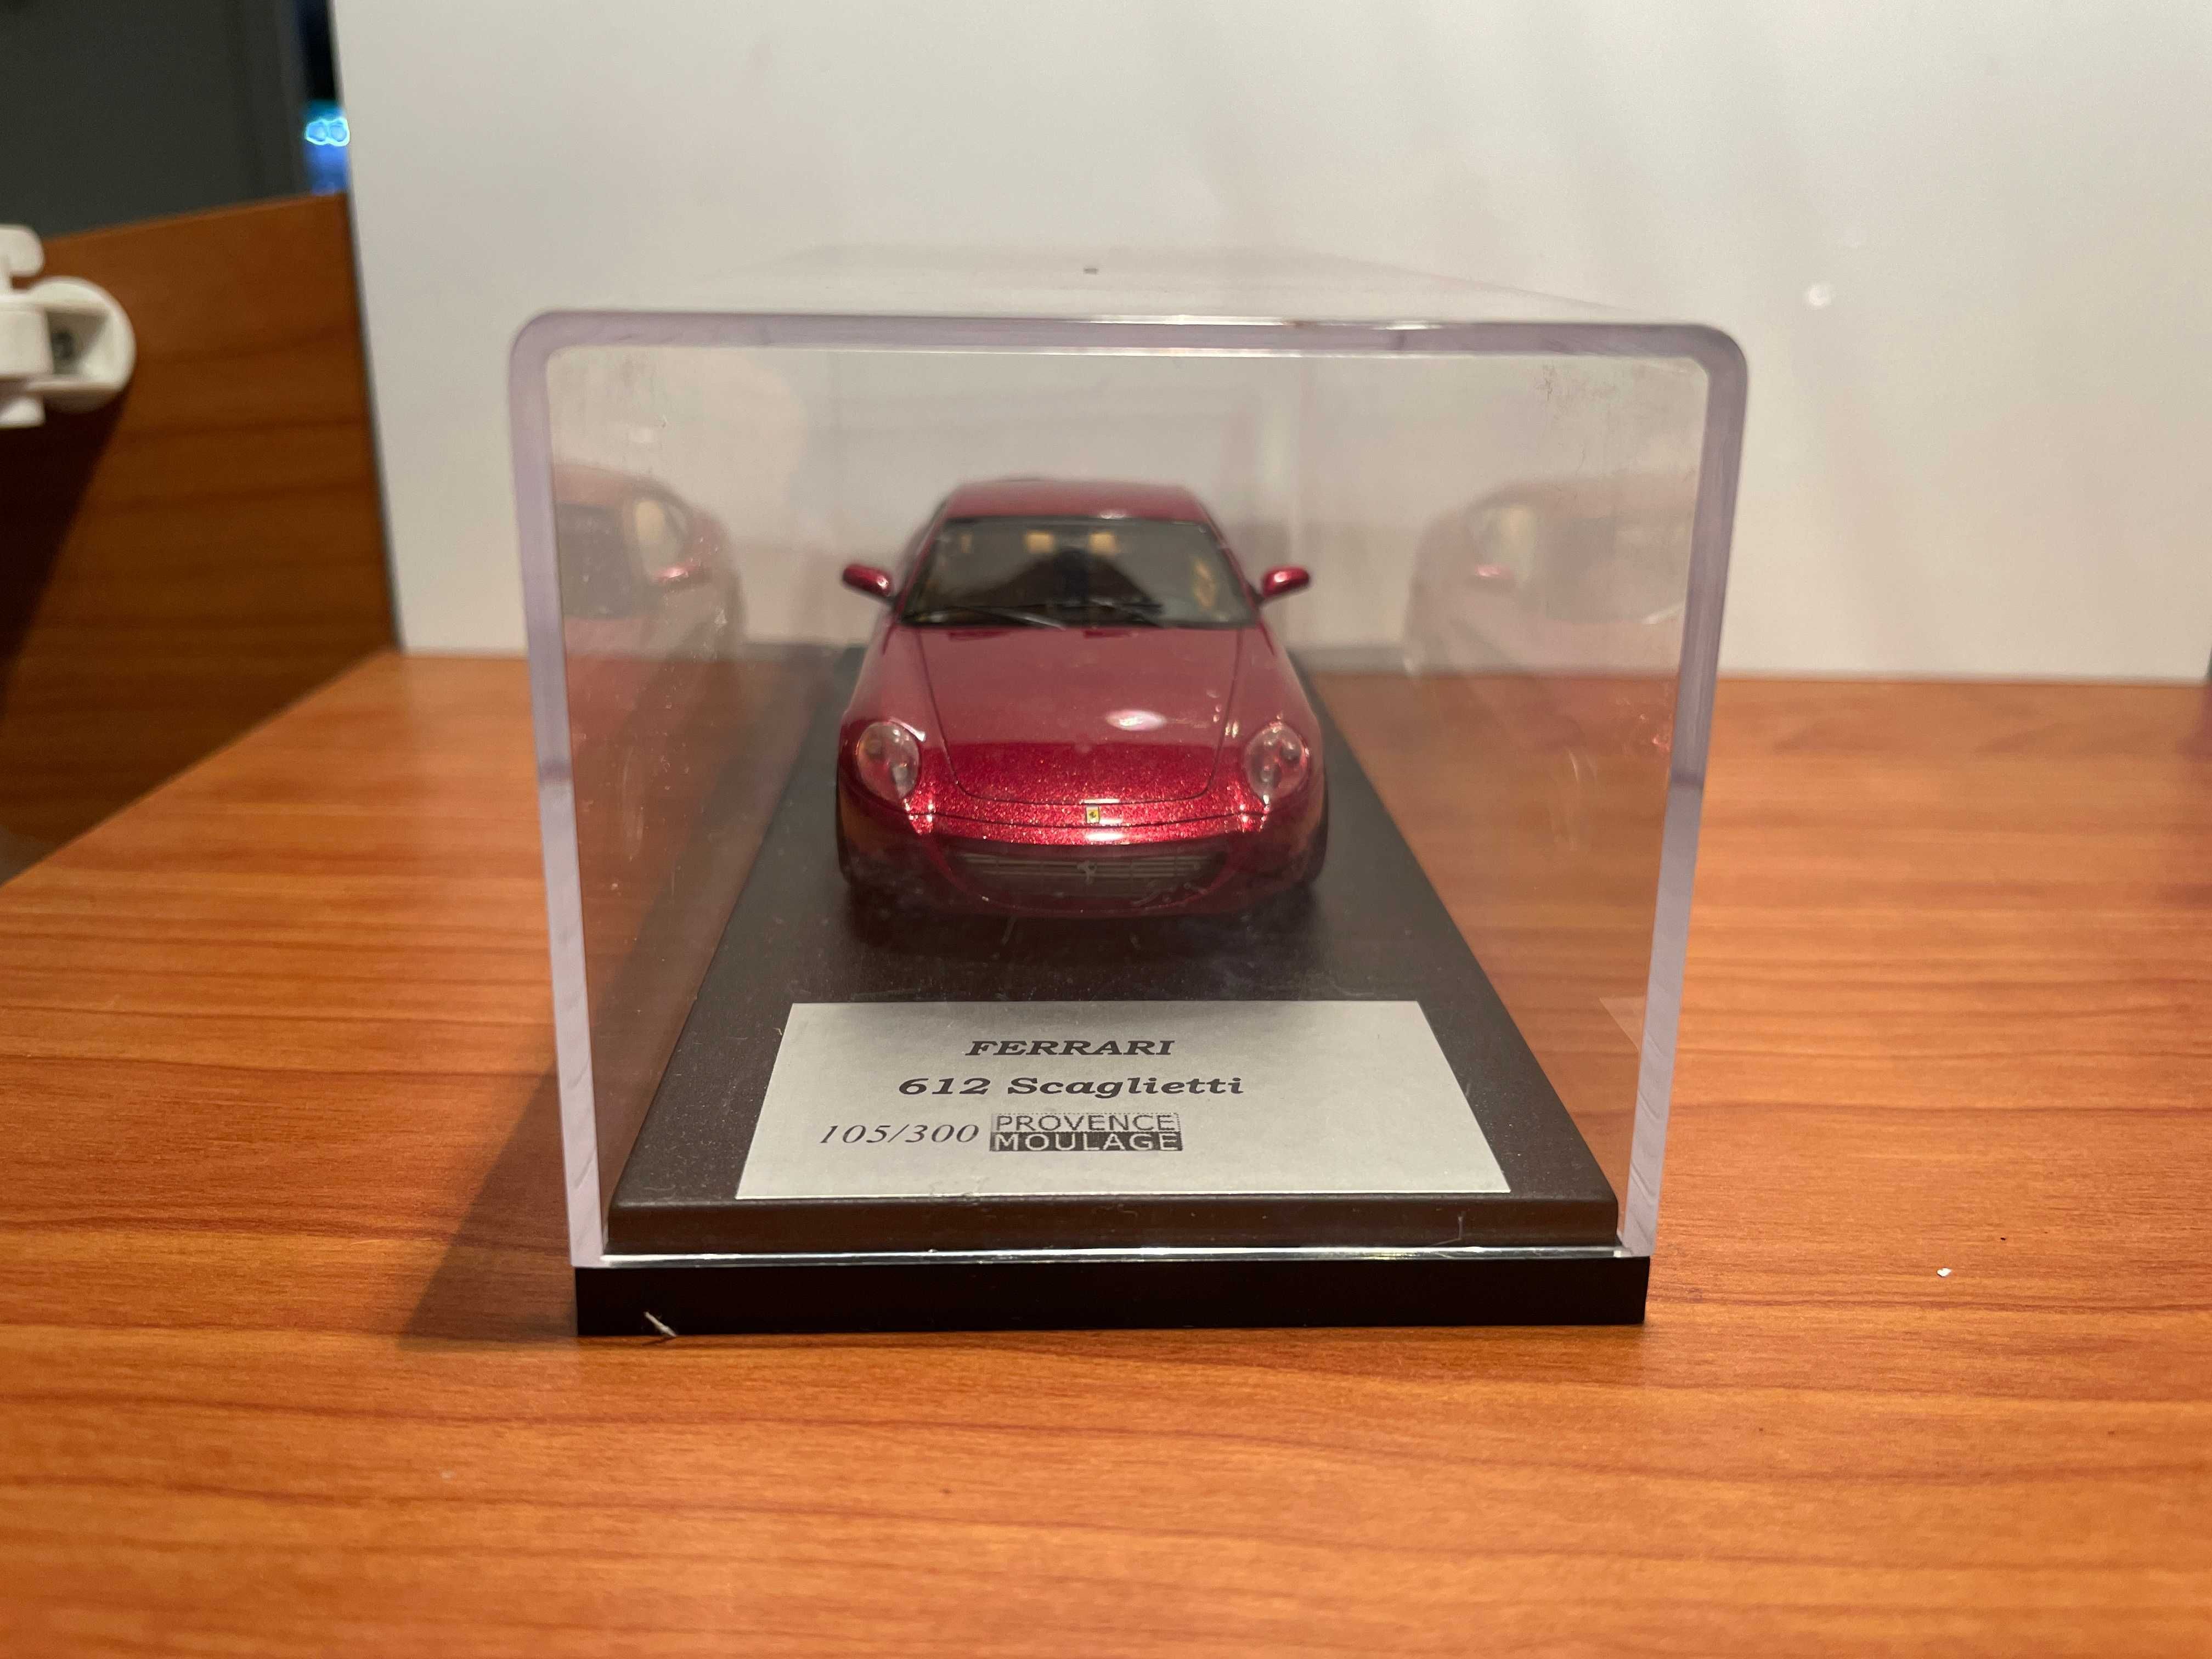 Ferrari 612 Scaglietti 1:43 numerado